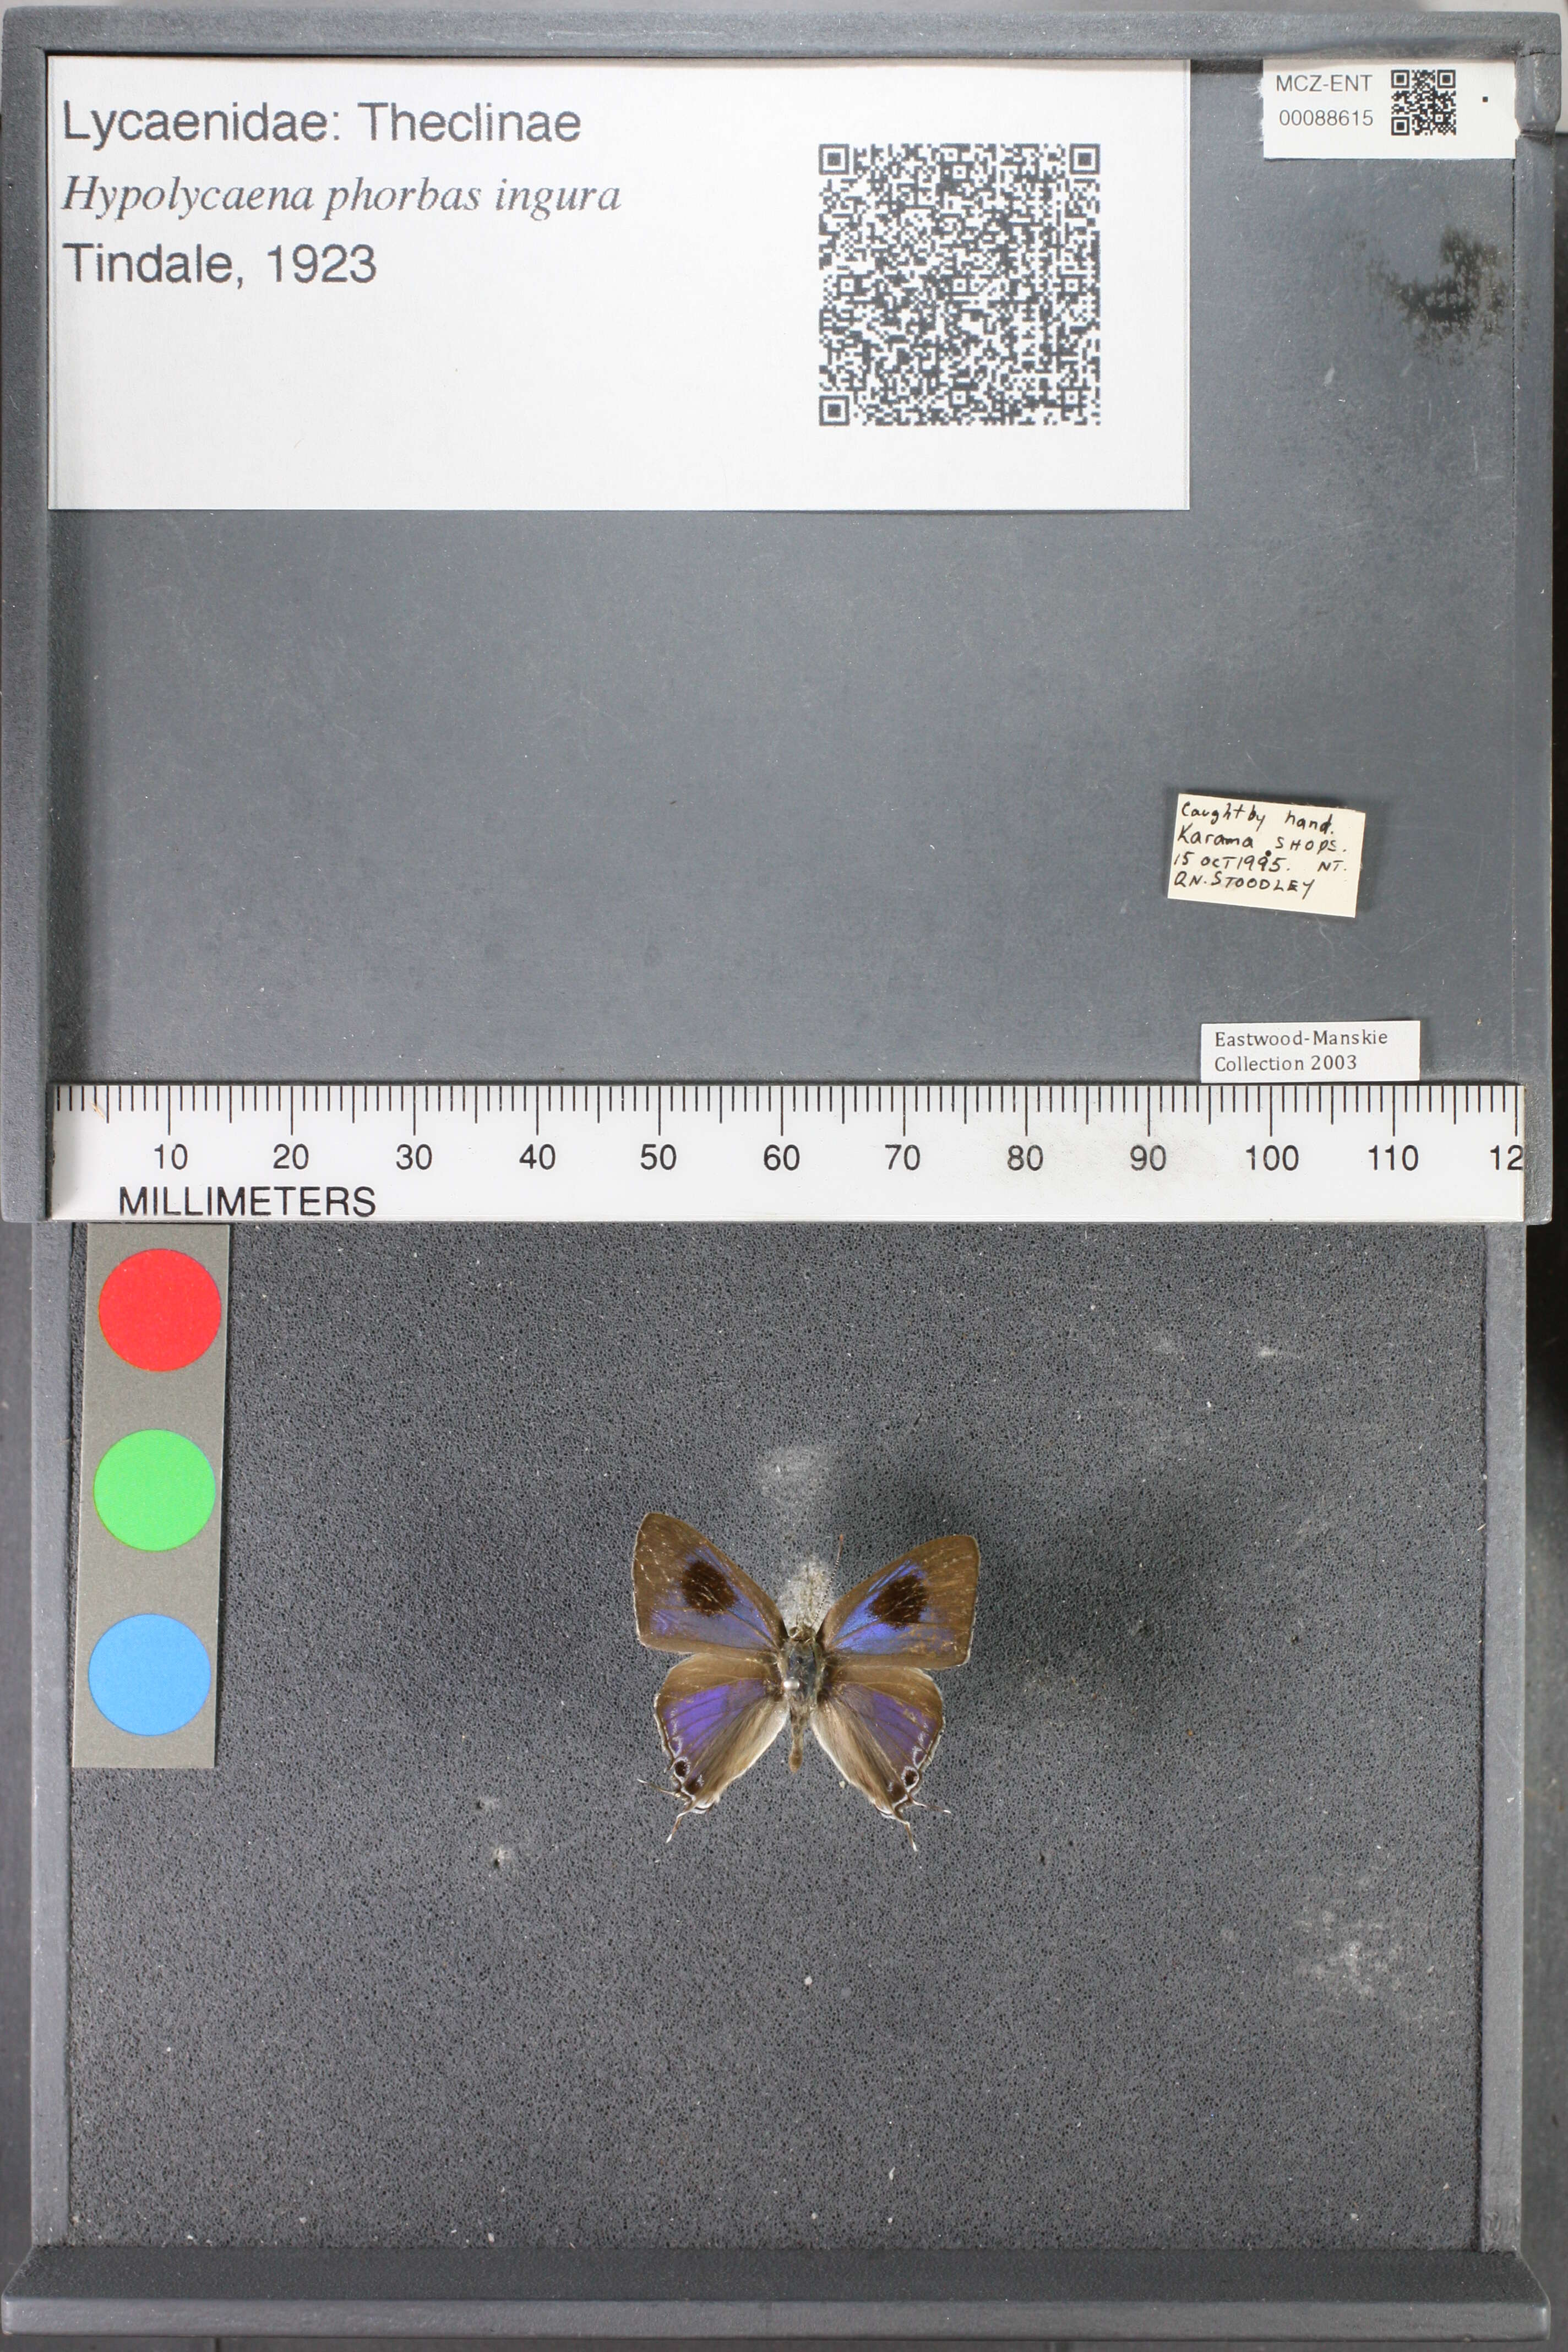 Image of Hypolycaena phorbas ingura Tindale 1923